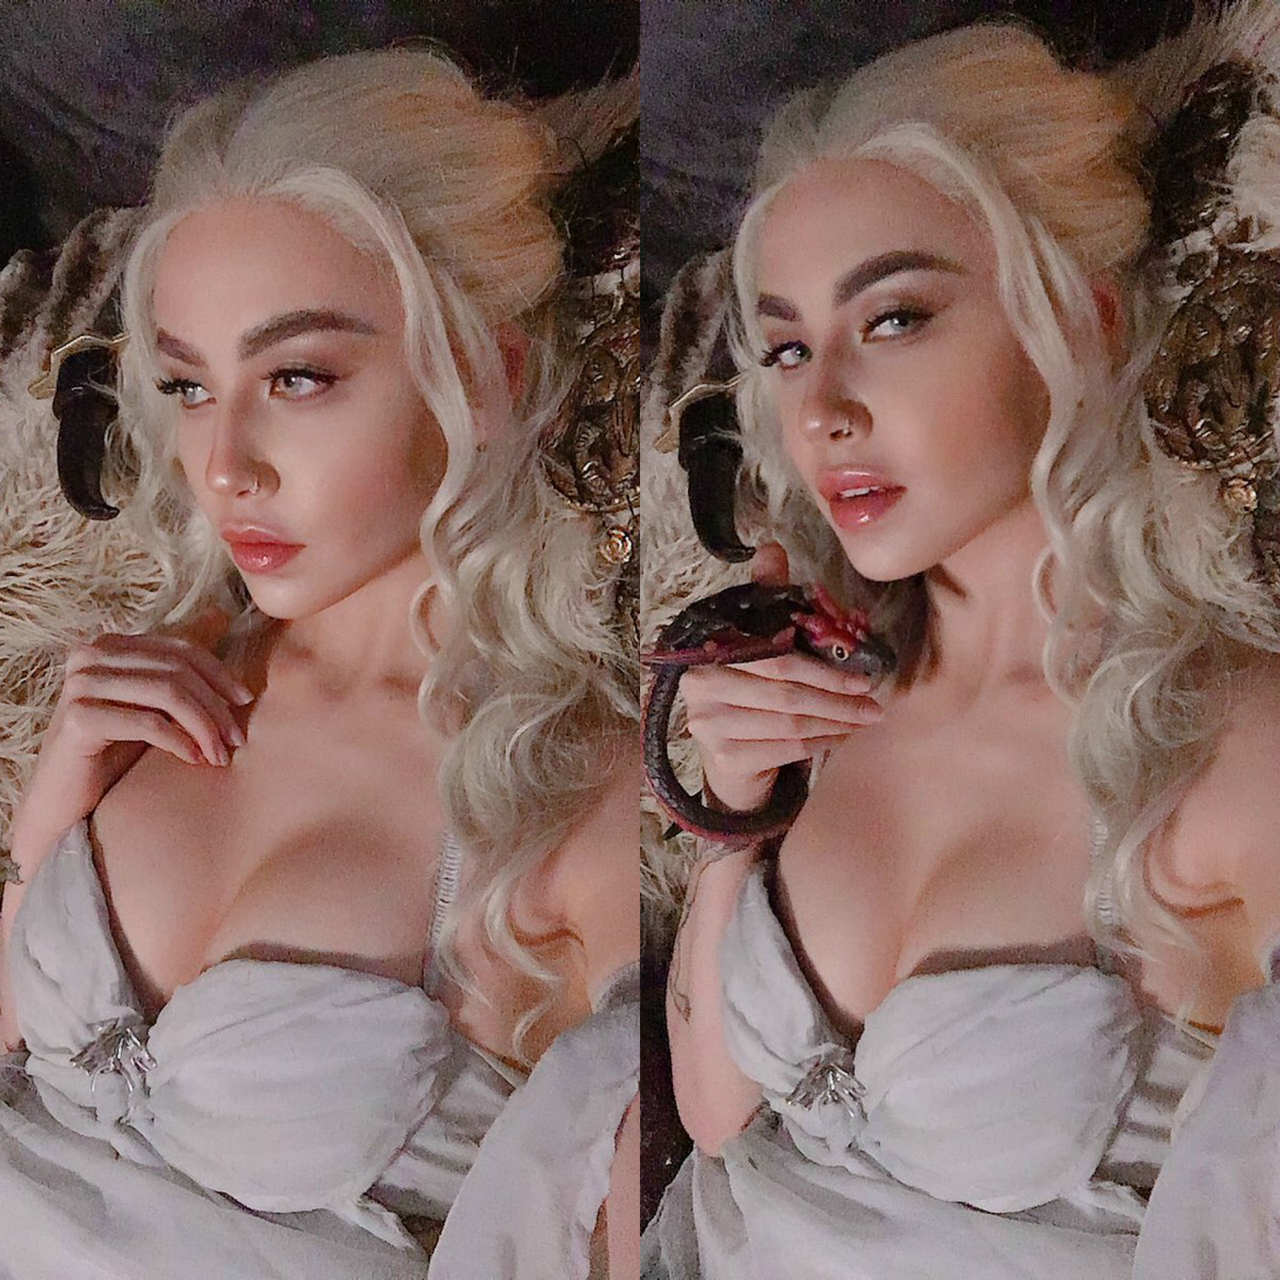 Daenerys Targaryen Wedding Dress Cosplay From Game Of Thrones F09f9089f09f94a5 By Felicia Vo